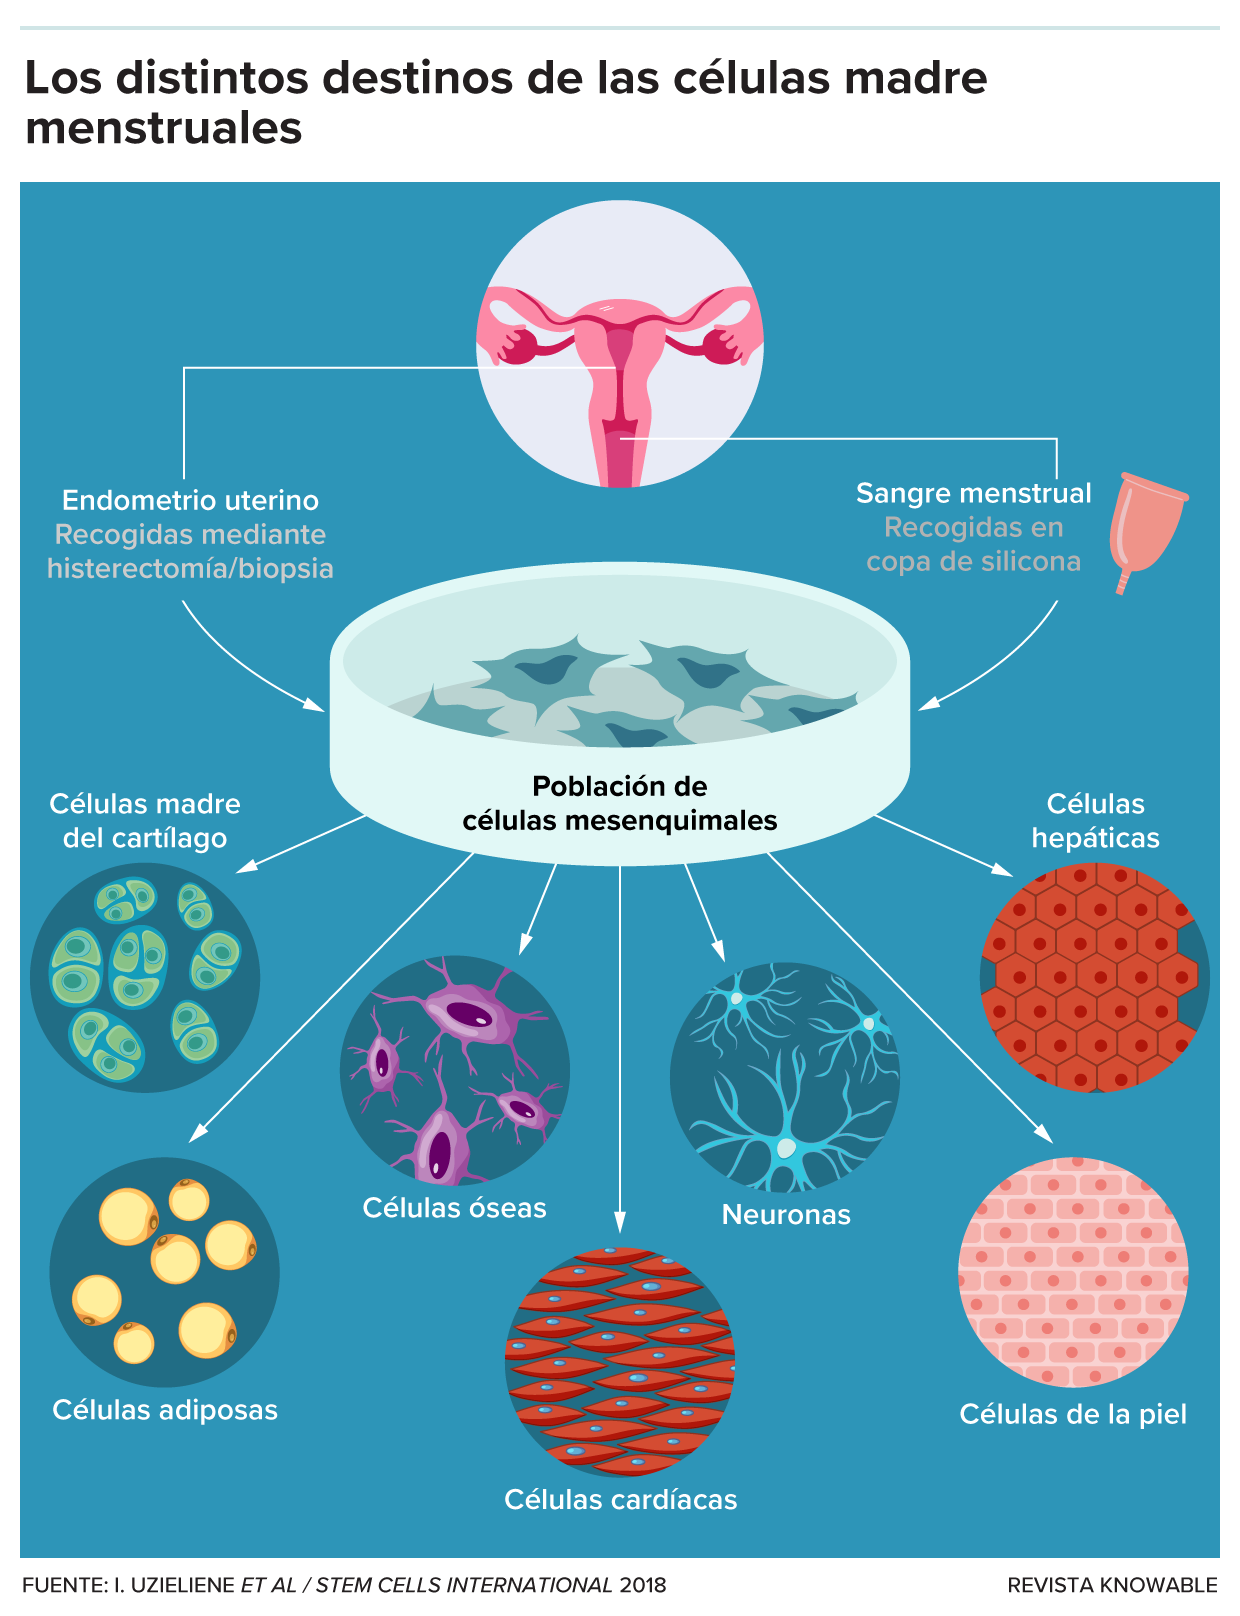 Diagrama de los diferentes tipos celulares que pueden surgir de las células madre menstruales.